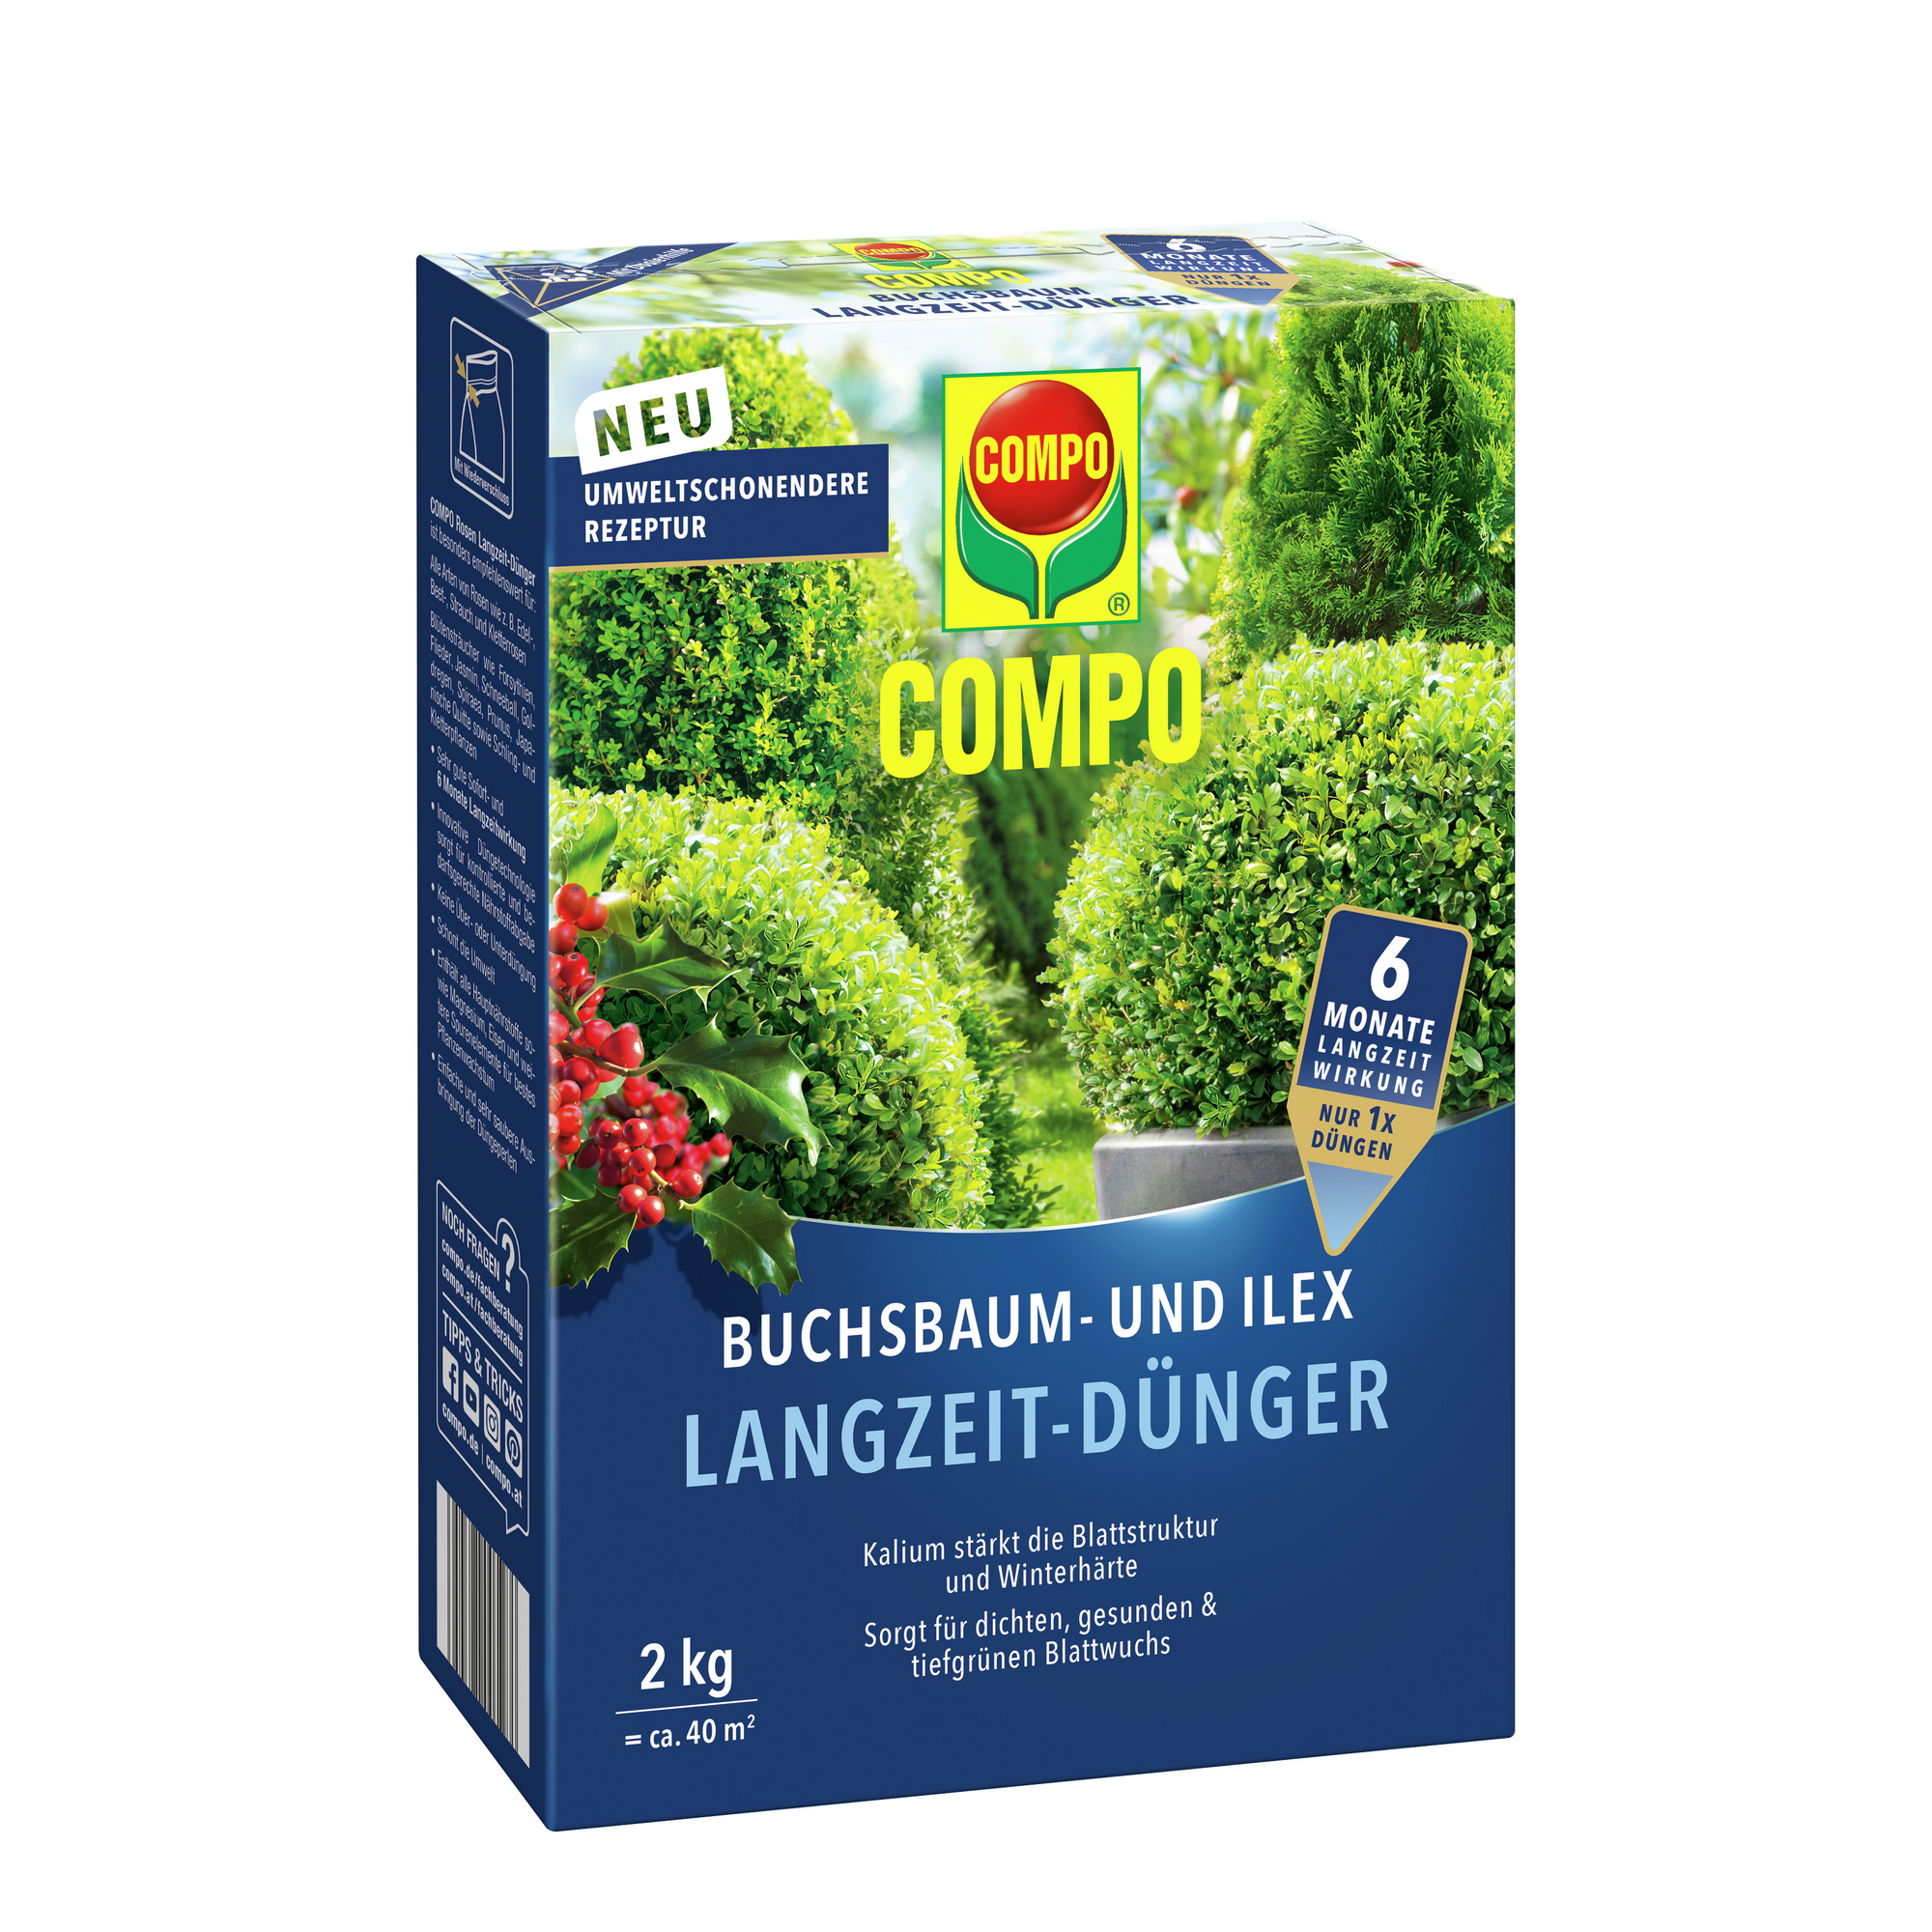 Buchsbaum- und Ilex-Langzeitdünger 2 kg + product picture